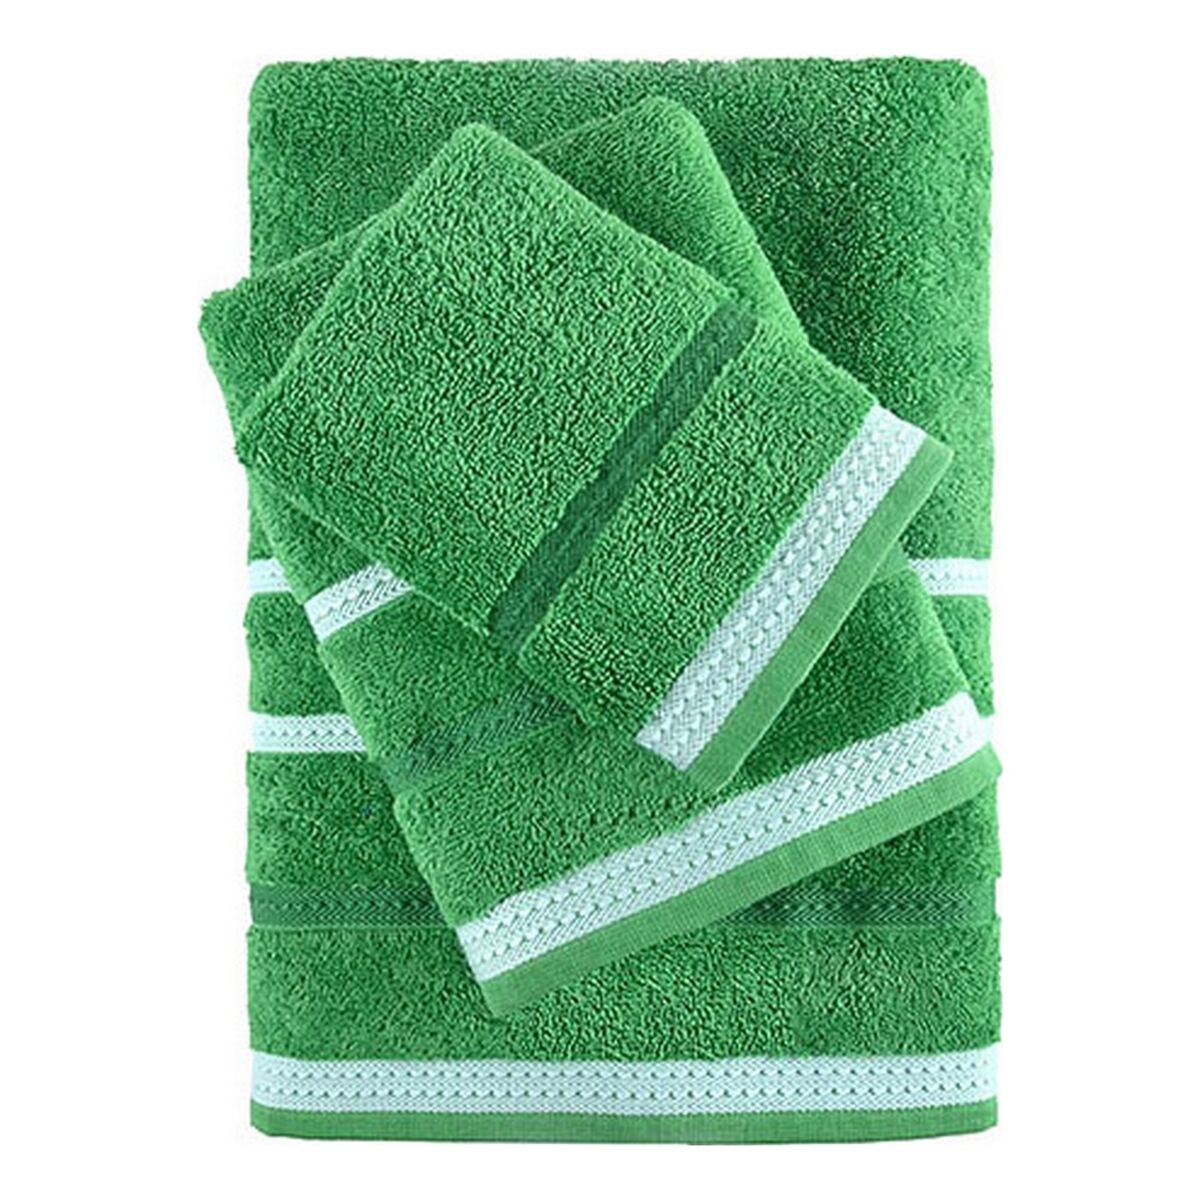 Handtuch-Waschlappen Set, vierteilig, grün